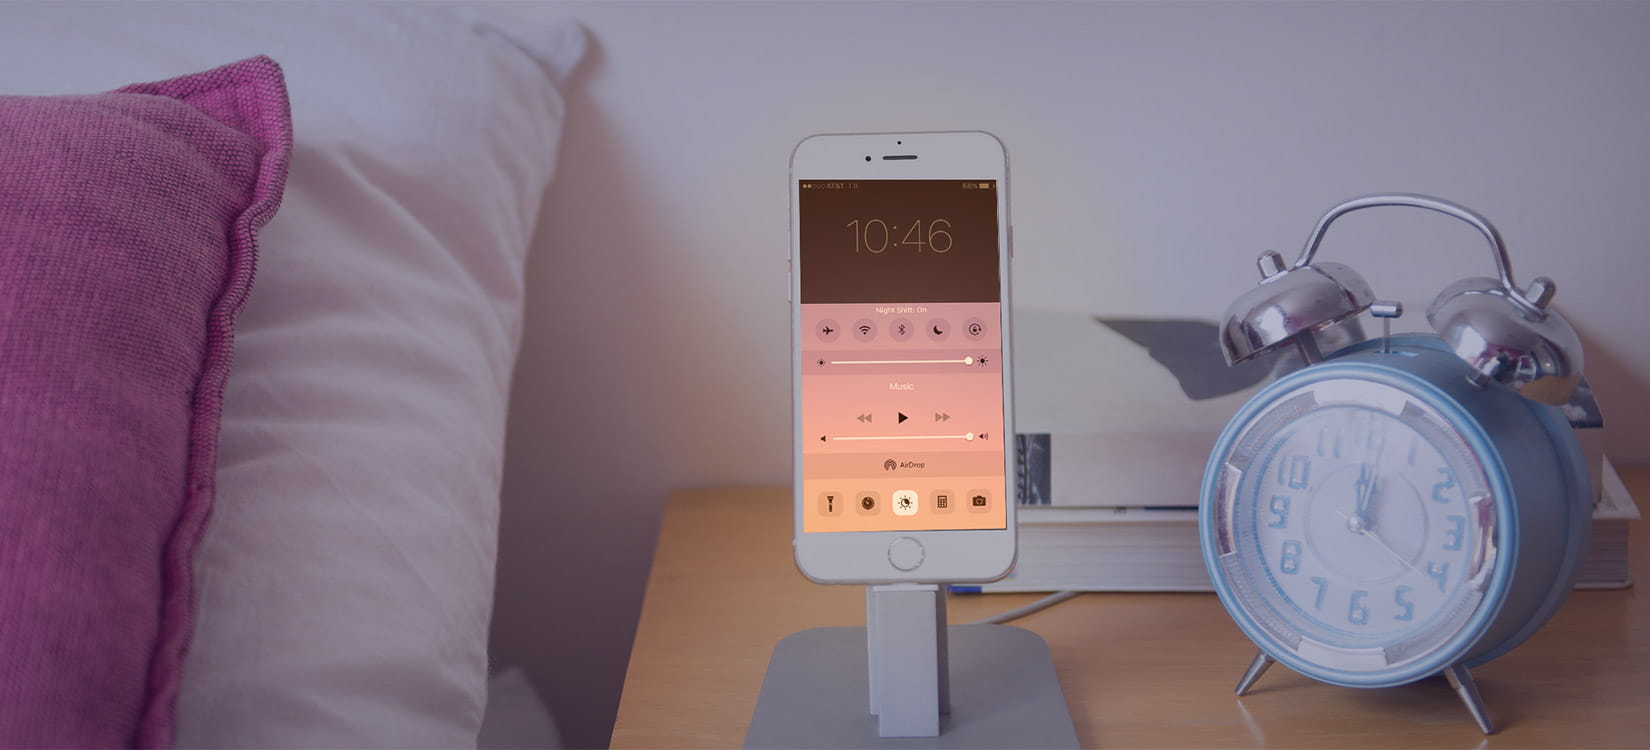 Apple's Night Shift Mode: How Smartphones Disrupt Sleep